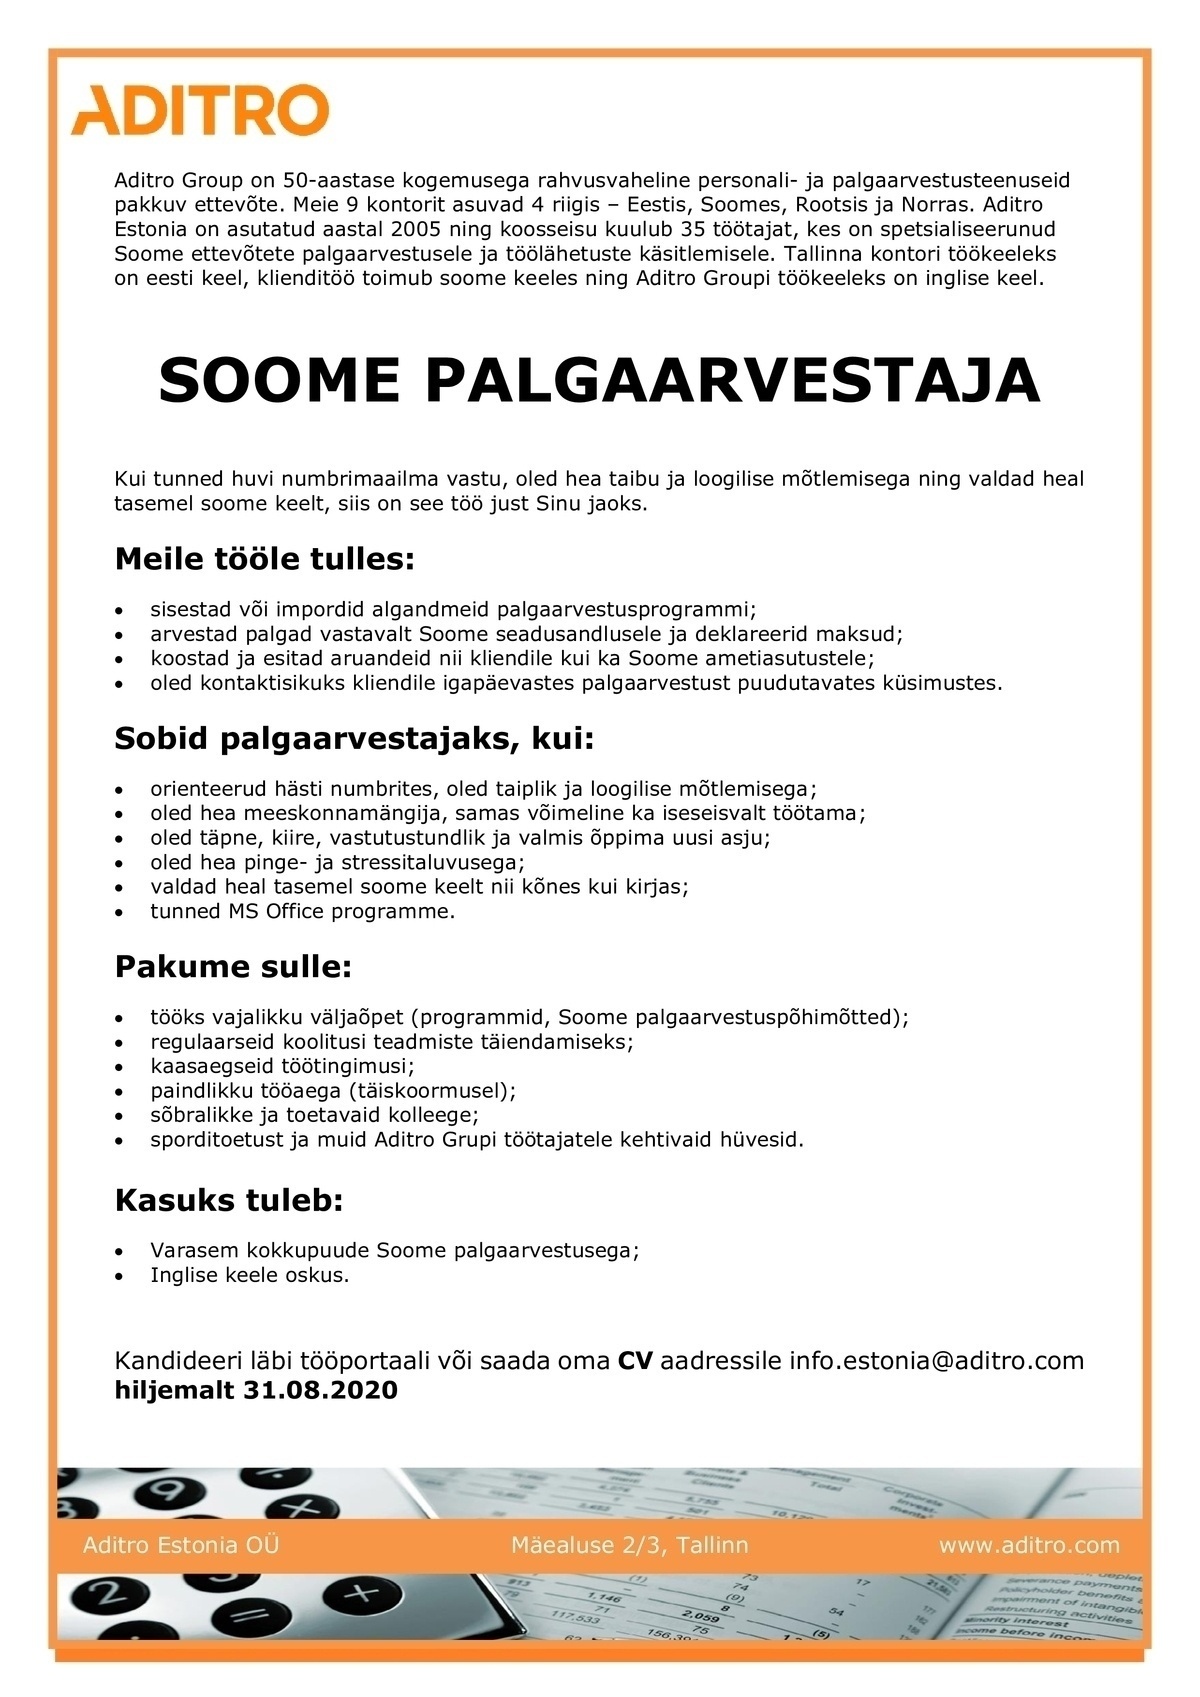 Aditro Estonia OÜ Soome palgaarvestaja